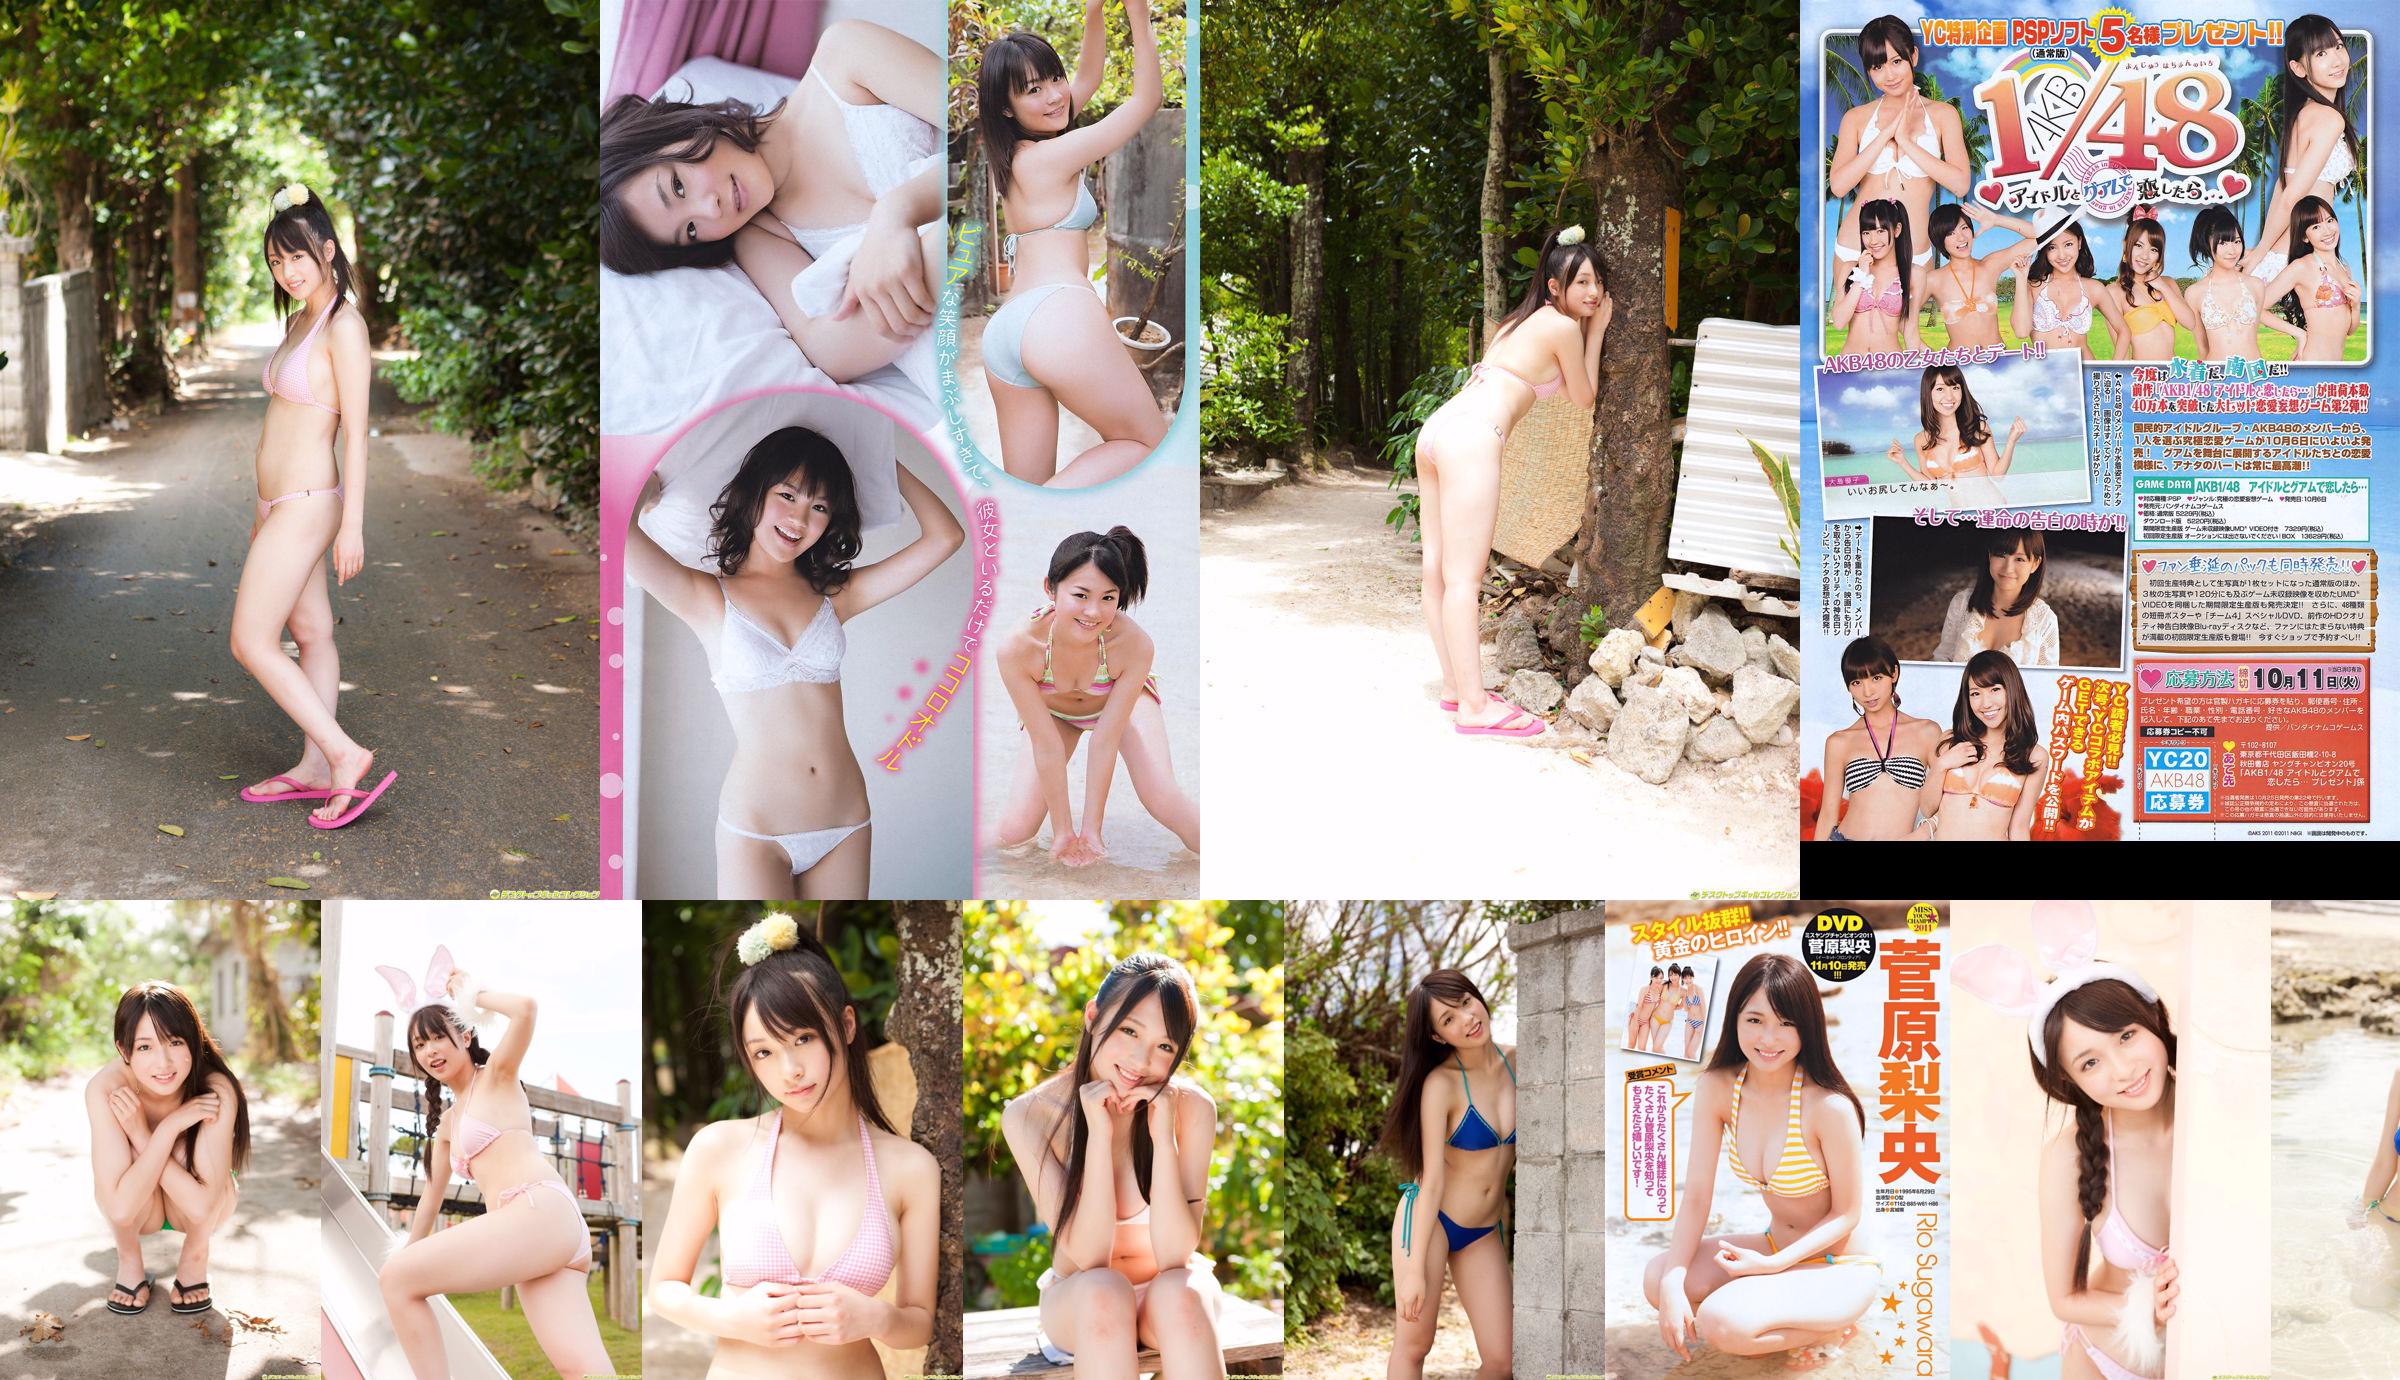 [Young Champion] Sugawara Risa, Horikawa Mikako, Matsushima no か 2011 No. 20 Photo Magazine No.03359f Page 7